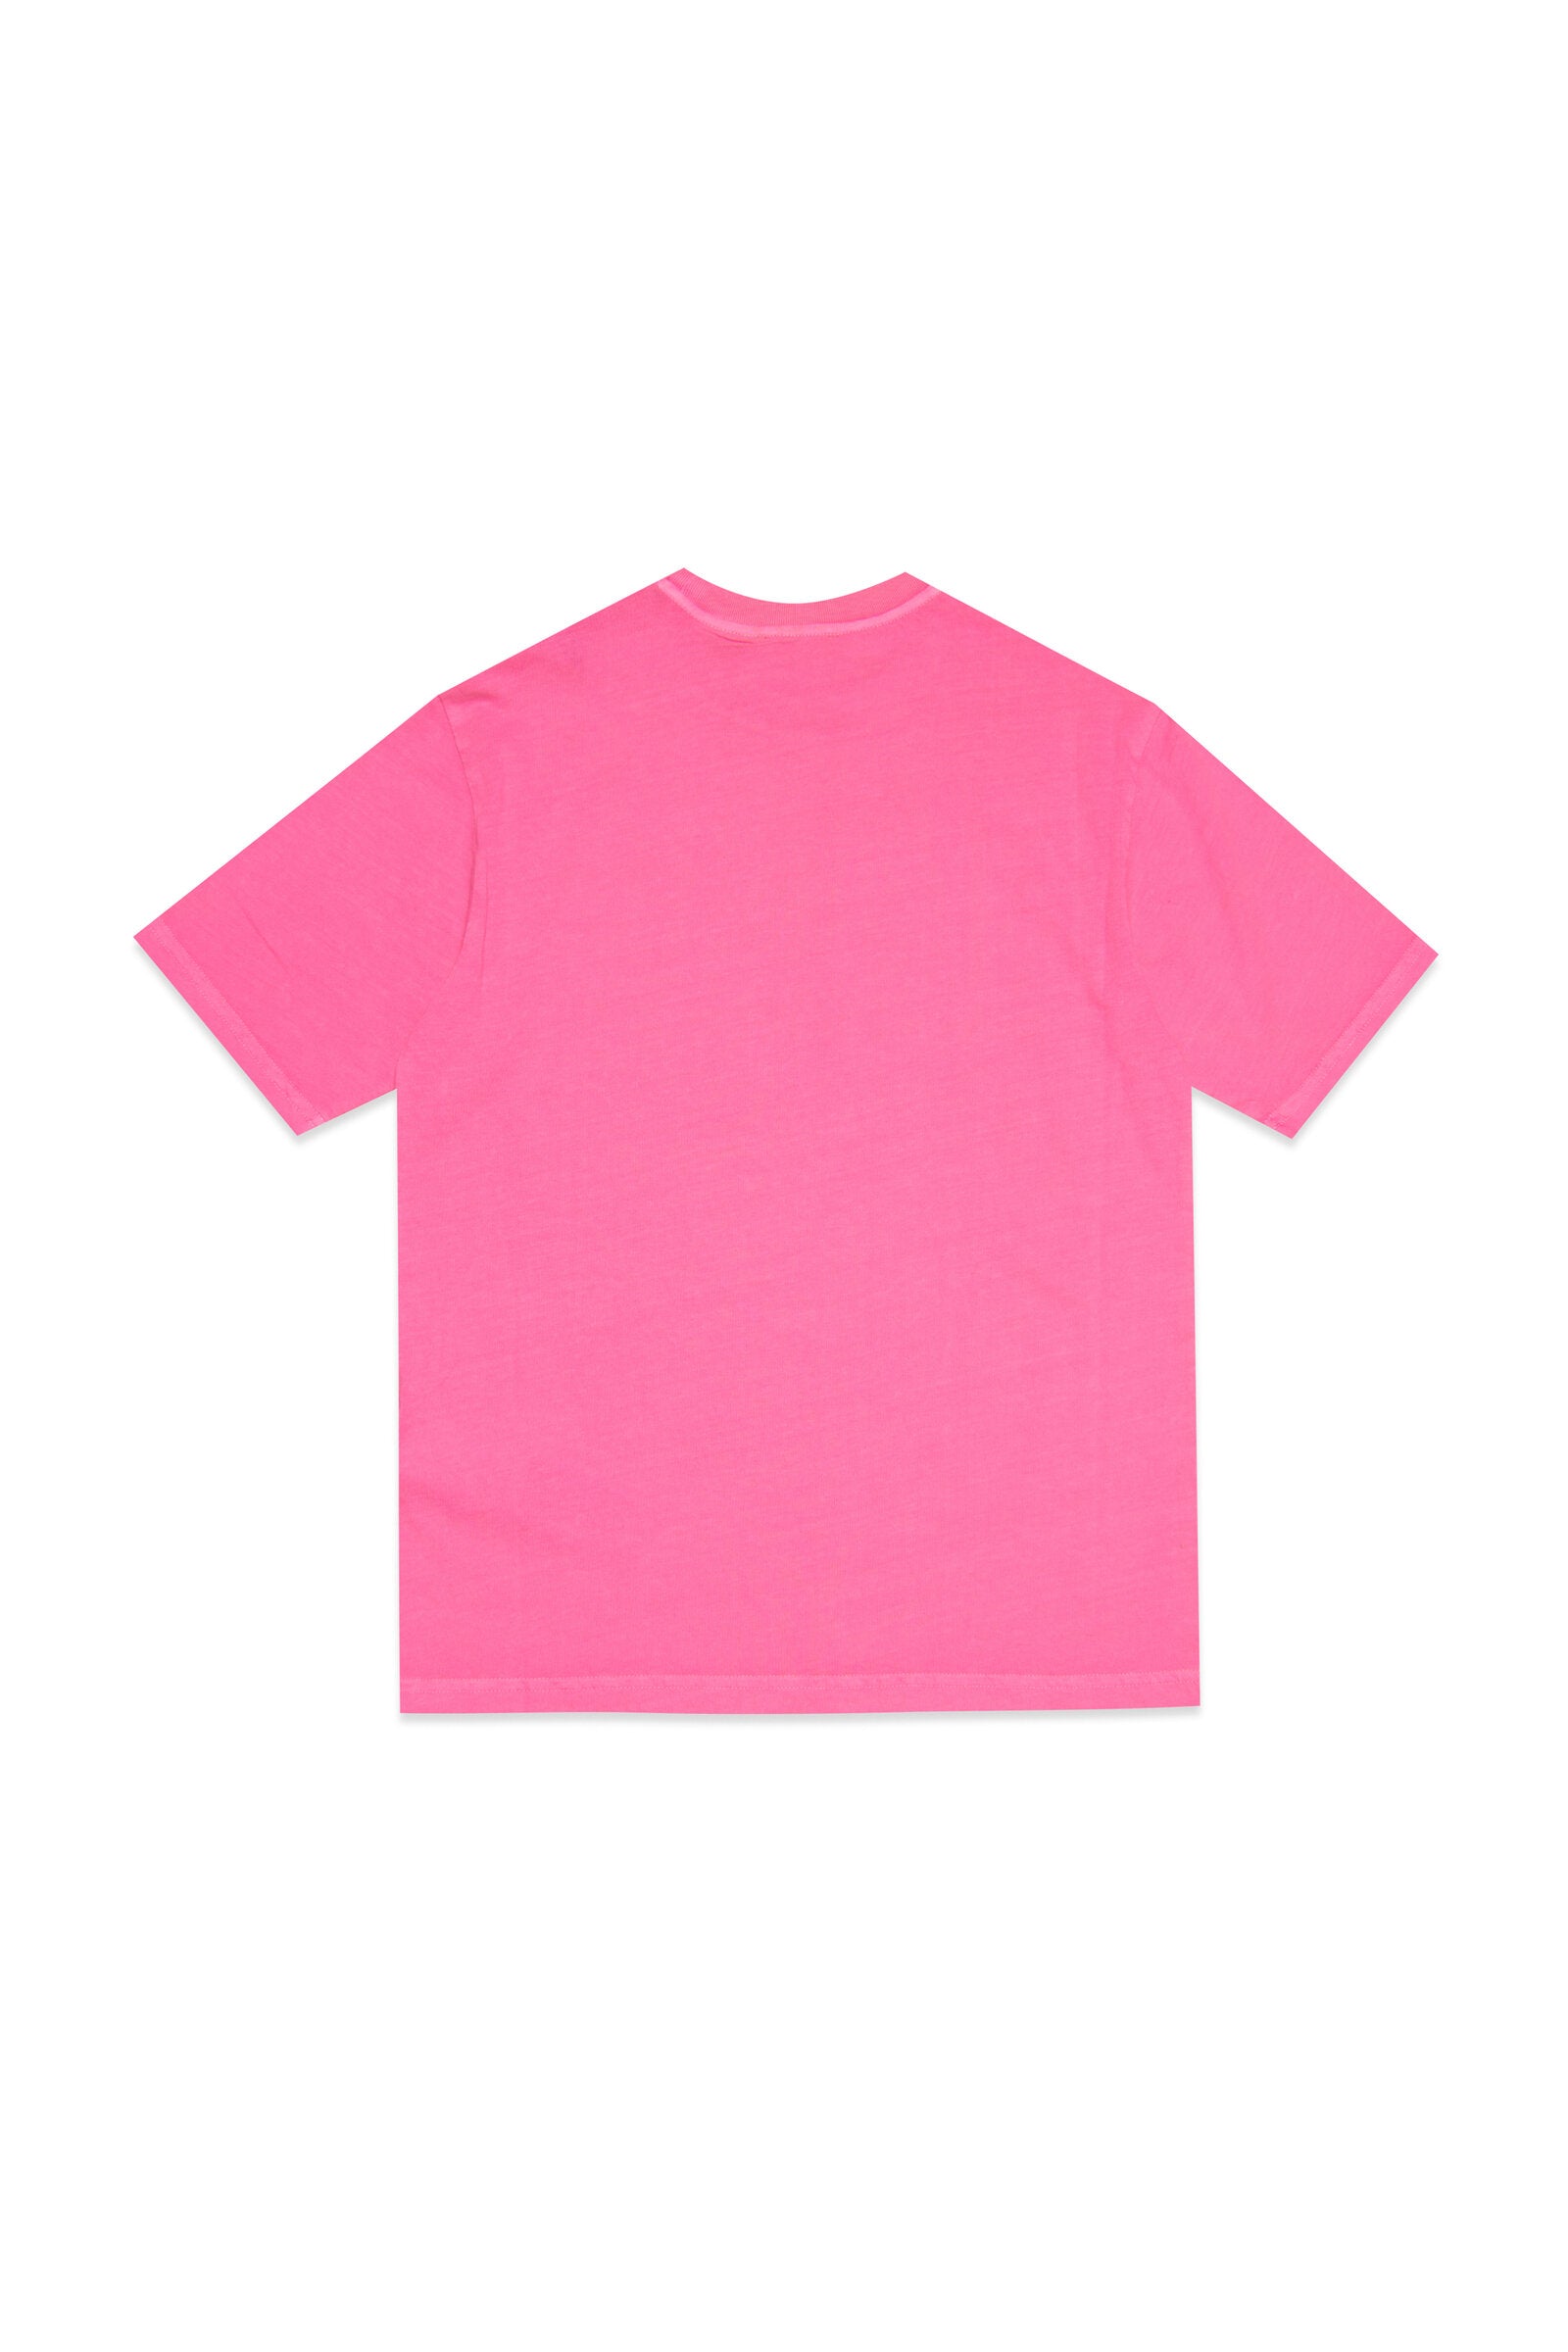 Camiseta de jersey rosa fluo con logotipo